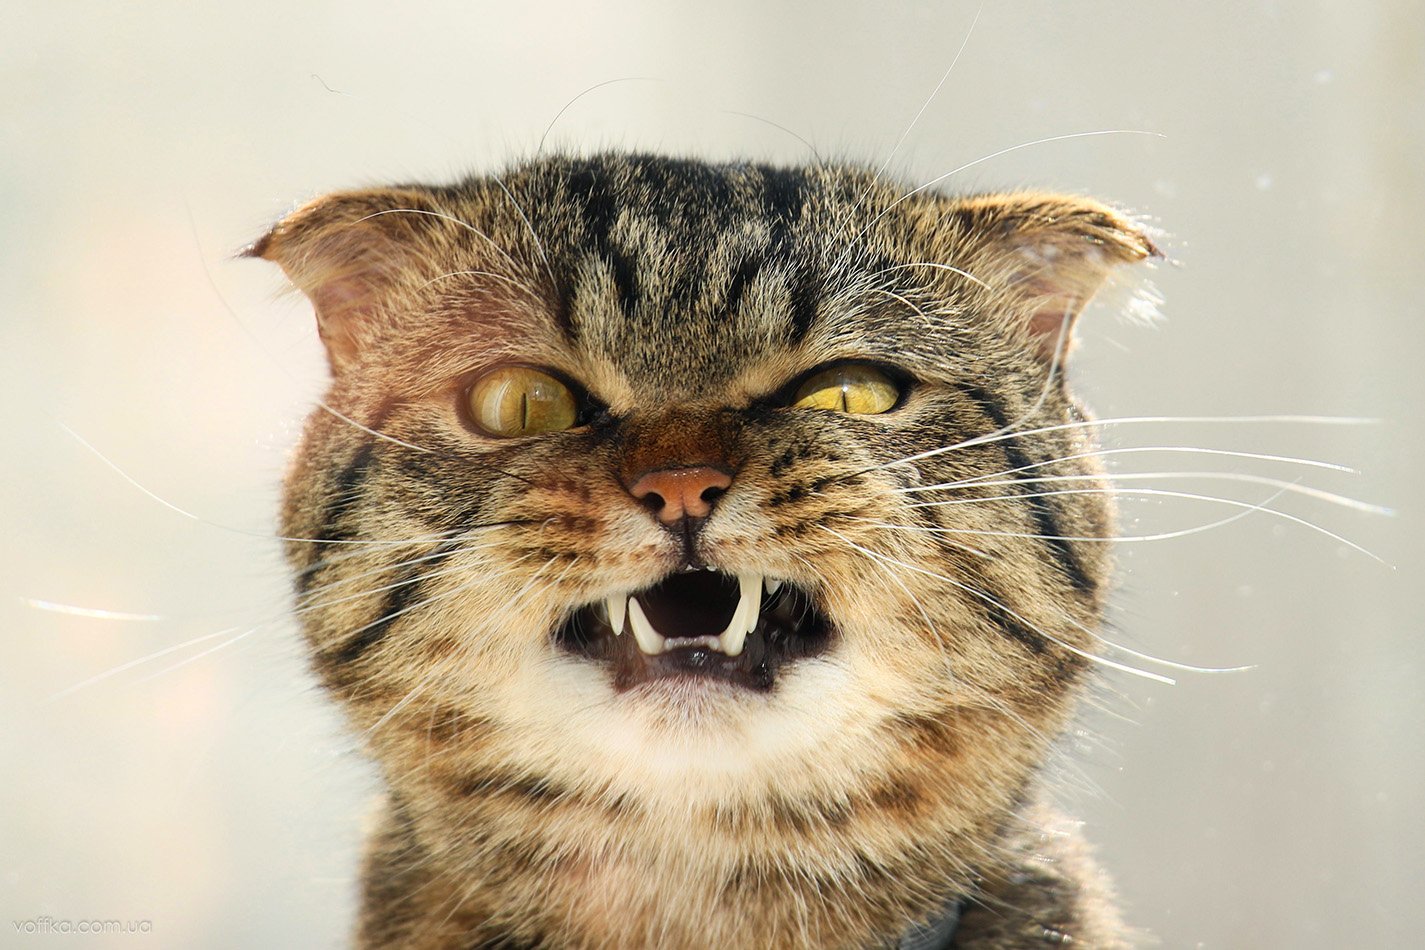 cat,	evil,	жанровый портрет, животное,	кот,	коты,	котэ, кошка,	кошки,	эмоции,	angry, питомец,	домашнее животное,	шотландец,	pet, angry cat,	evil cat,	злой кот, сема,	сердитый кот, шотландский вислоухий, Владимир Переклицкий